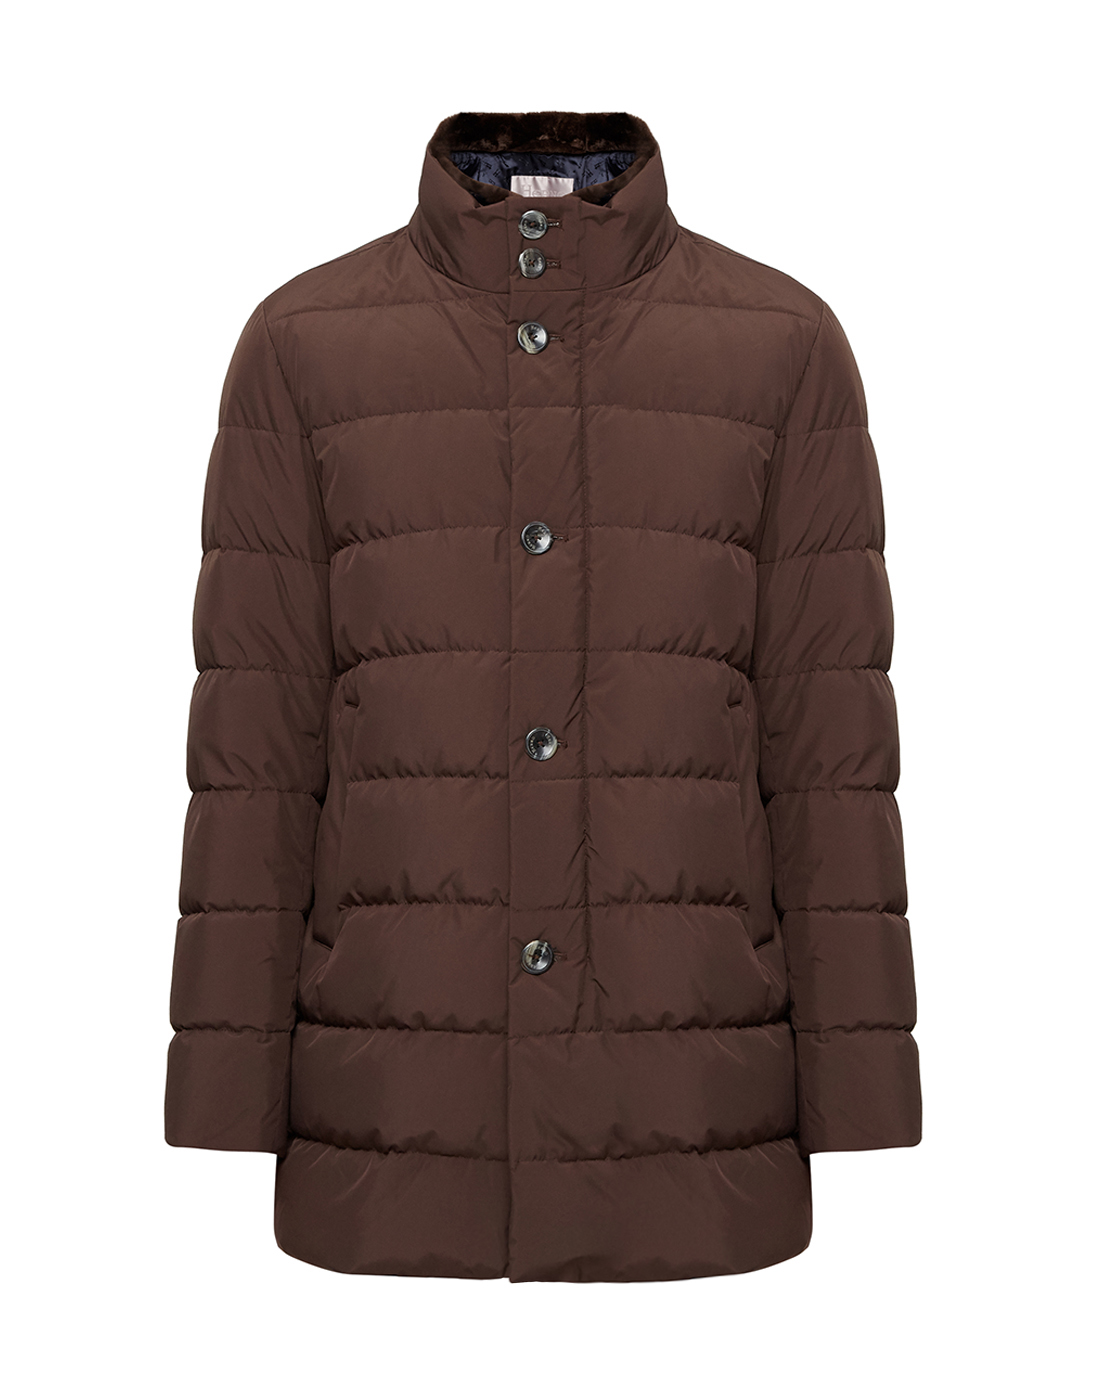 Мужская коричневая куртка Herno SPI048UR - 12015 - 8940-1